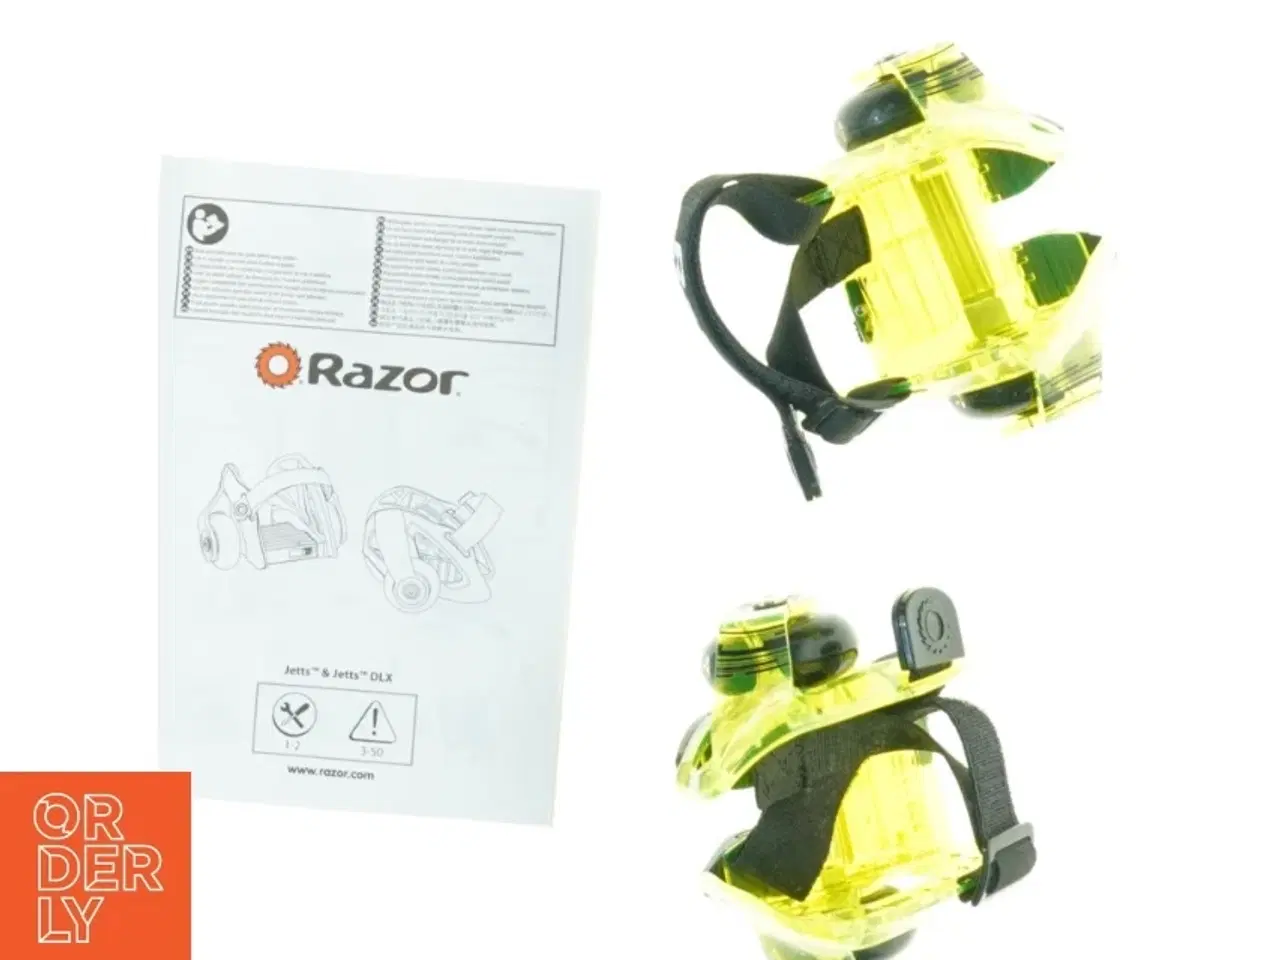 Billede 3 - Razor Jetts hæl-rulleskøjter fra Razor (str. Max 80 kilo)